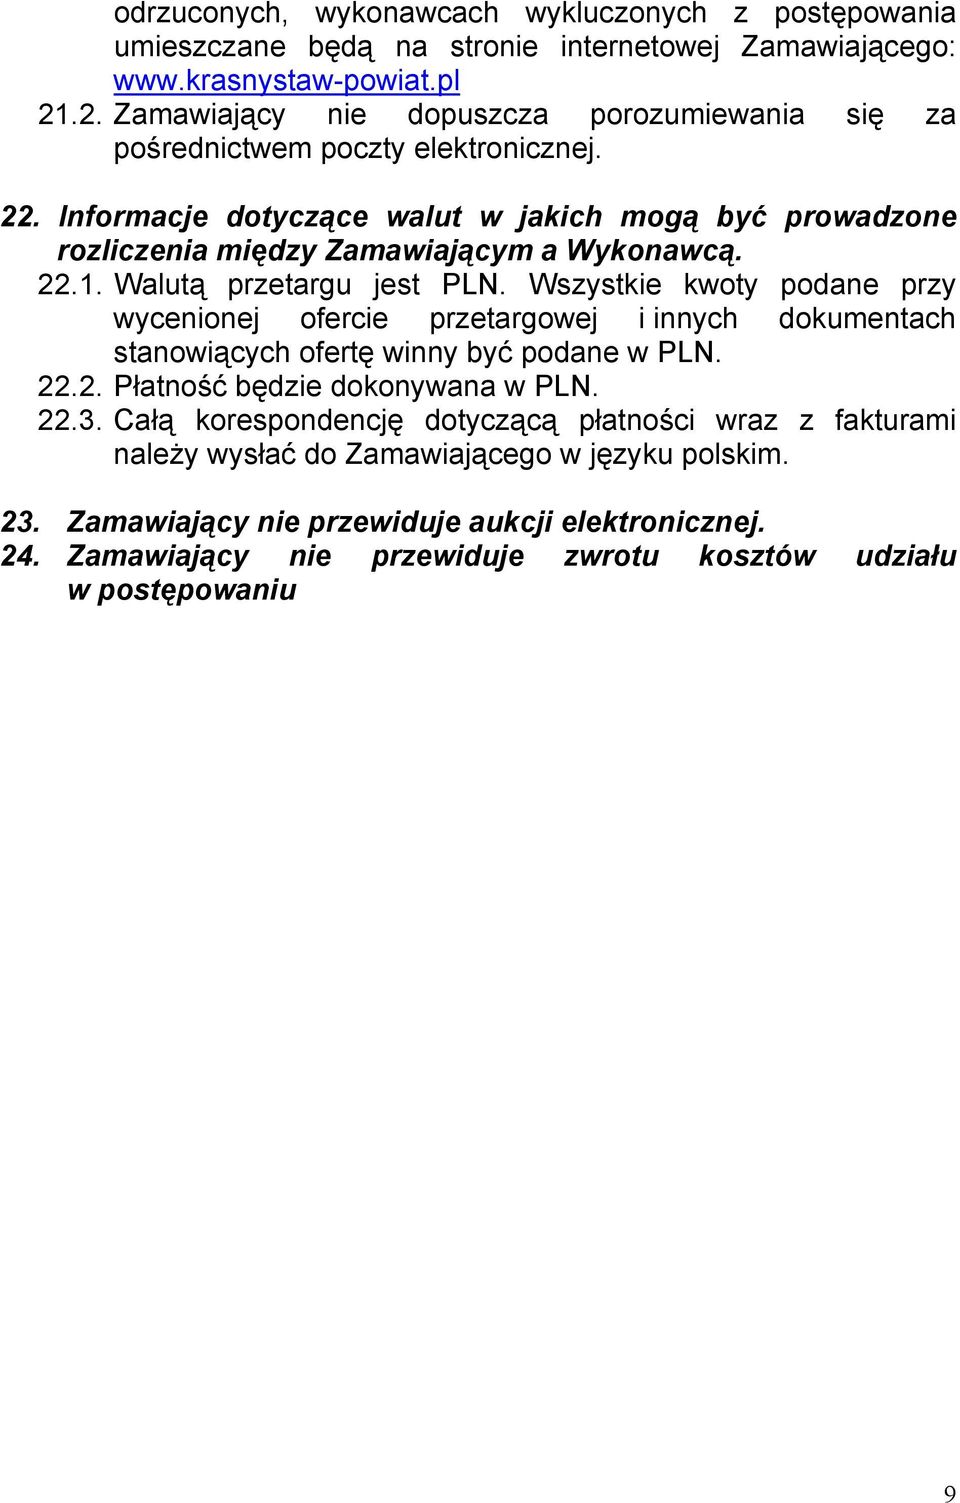 Informacje dotyczące walut w jakich mogą być prowadzone rozliczenia między Zamawiającym a Wykonawcą. 22.1. Walutą przetargu jest PLN.